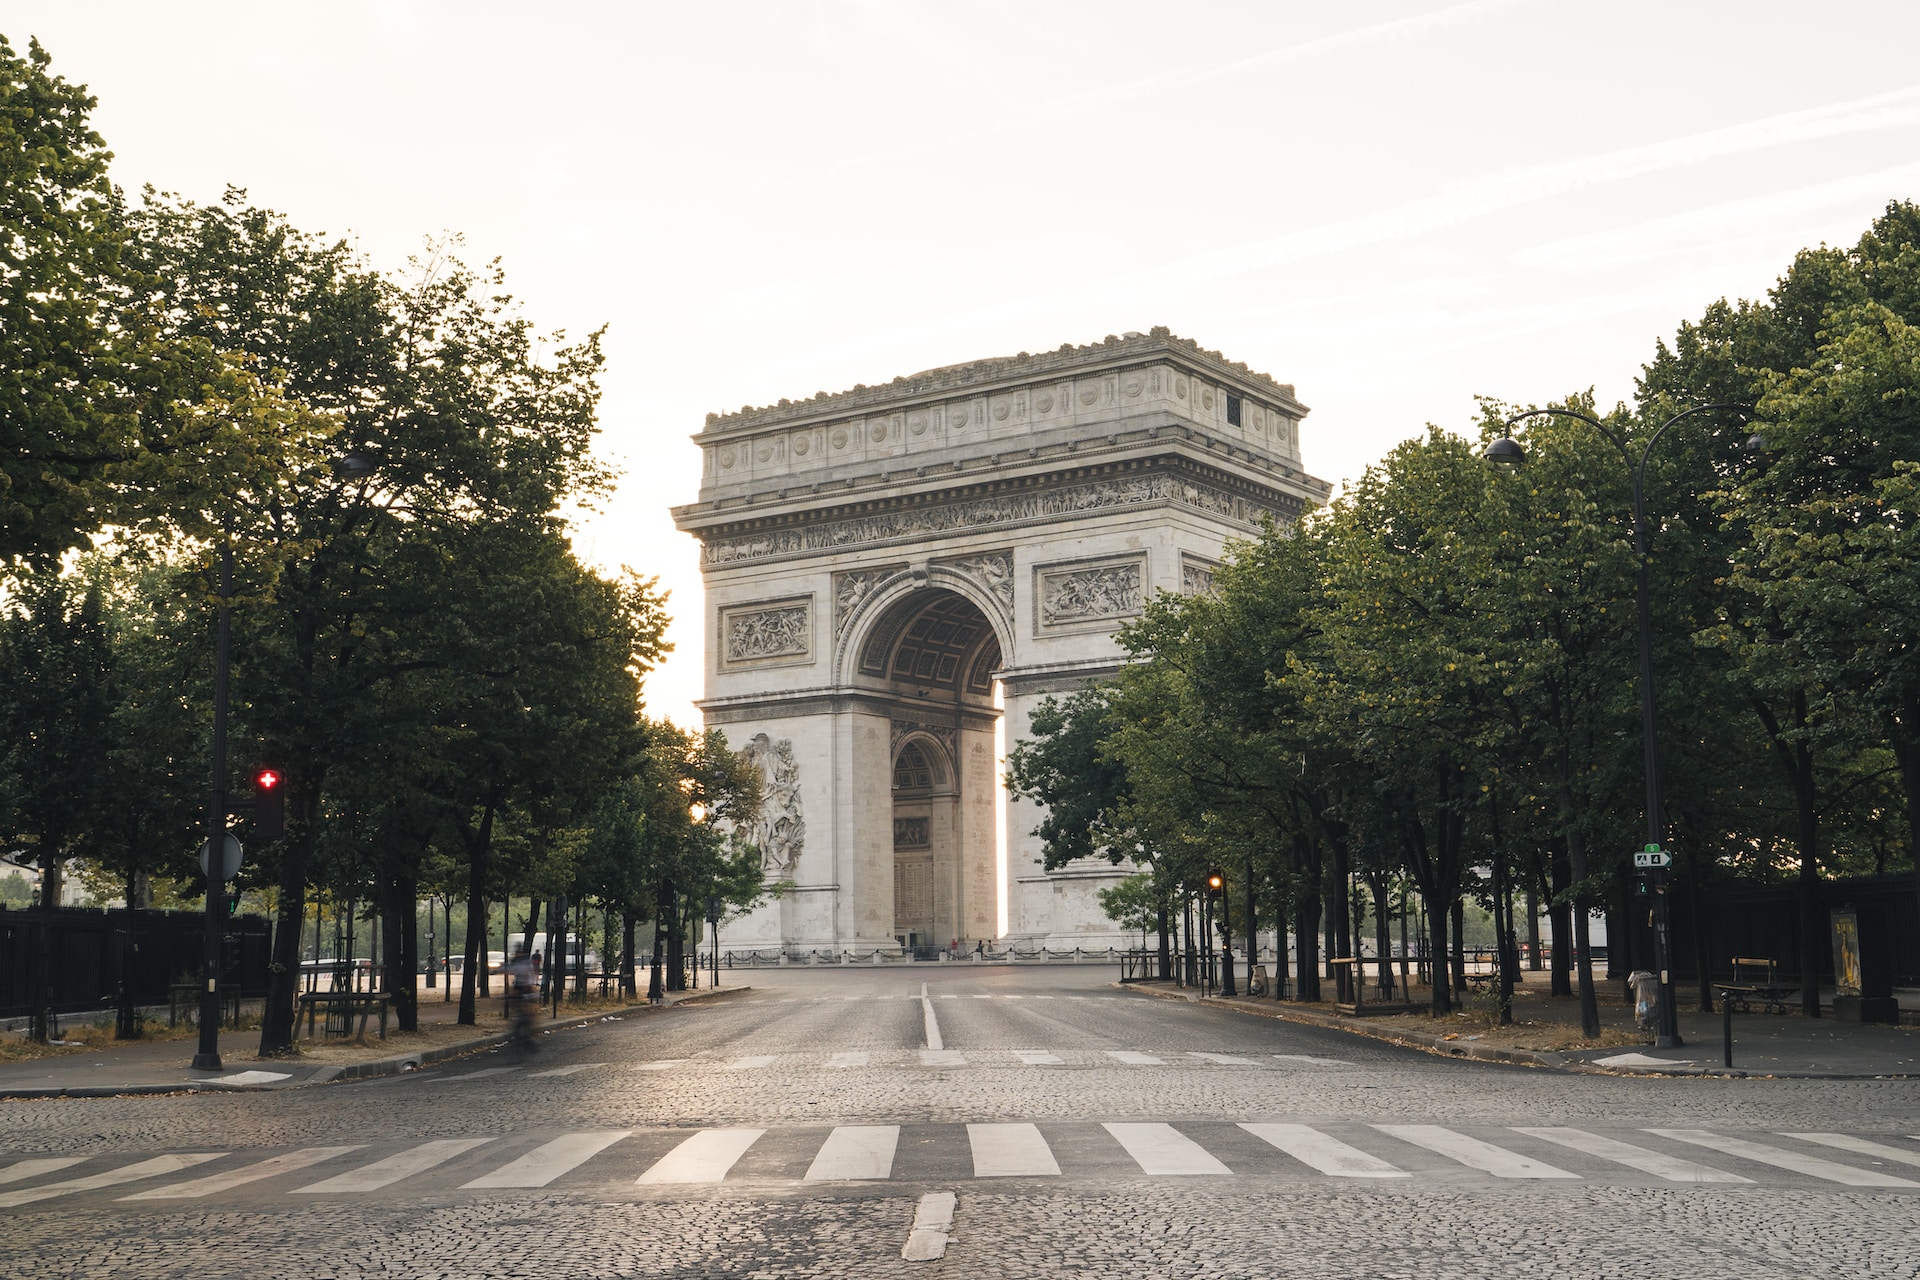  L'Arc de Triomphe de l'Etoile, Paris, France